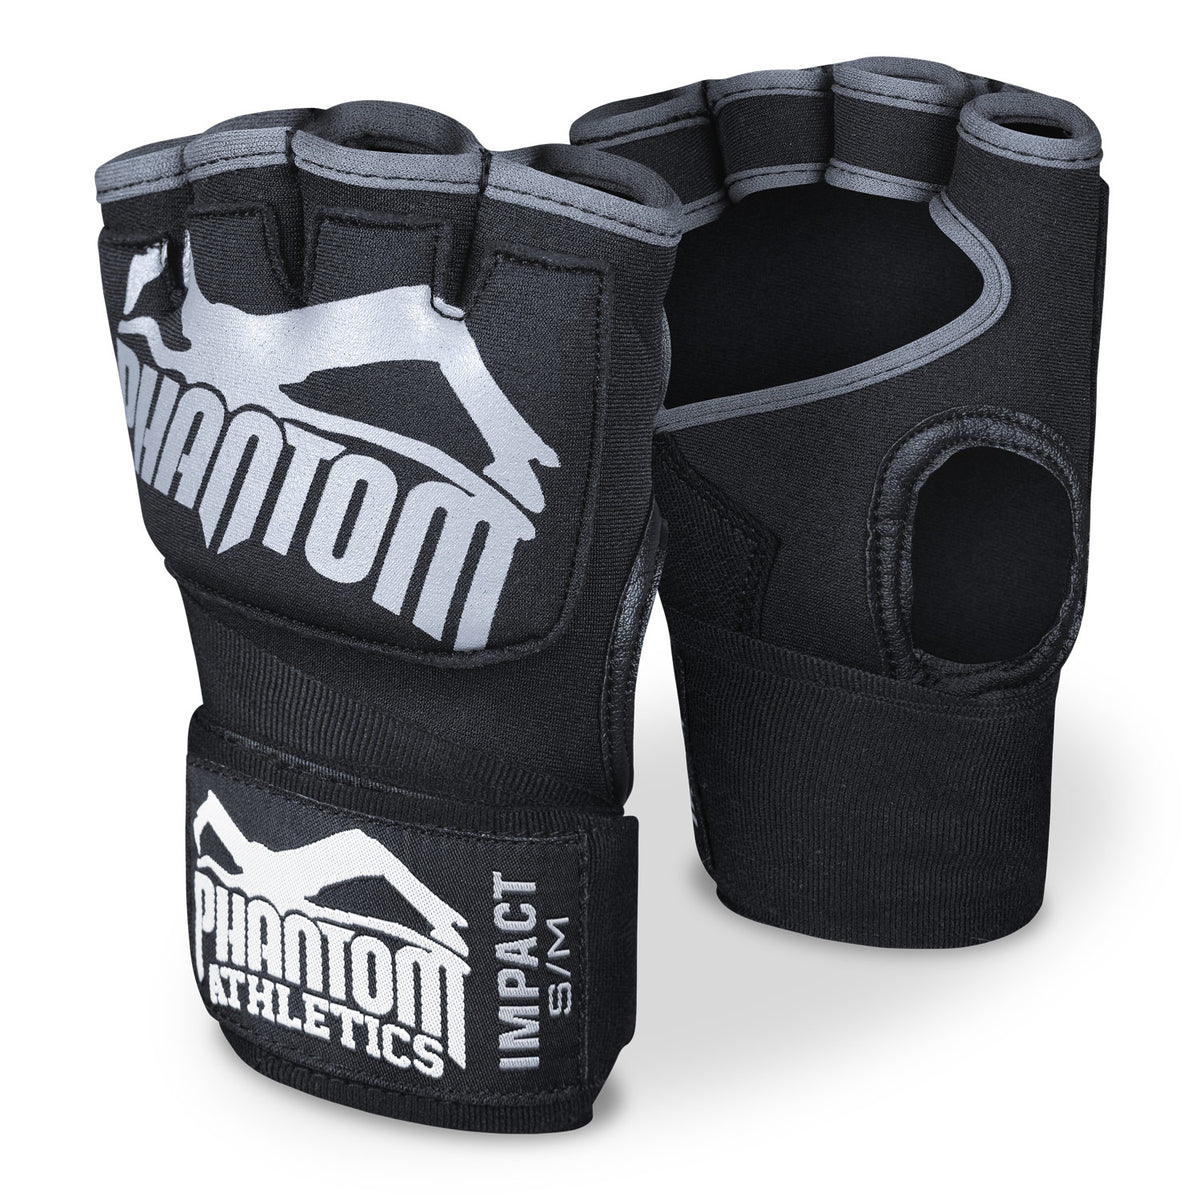 Le bende da boxe Phantom Impact con riempimento in gel. Per una maggiore protezione durante l'allenamento nelle arti marziali.